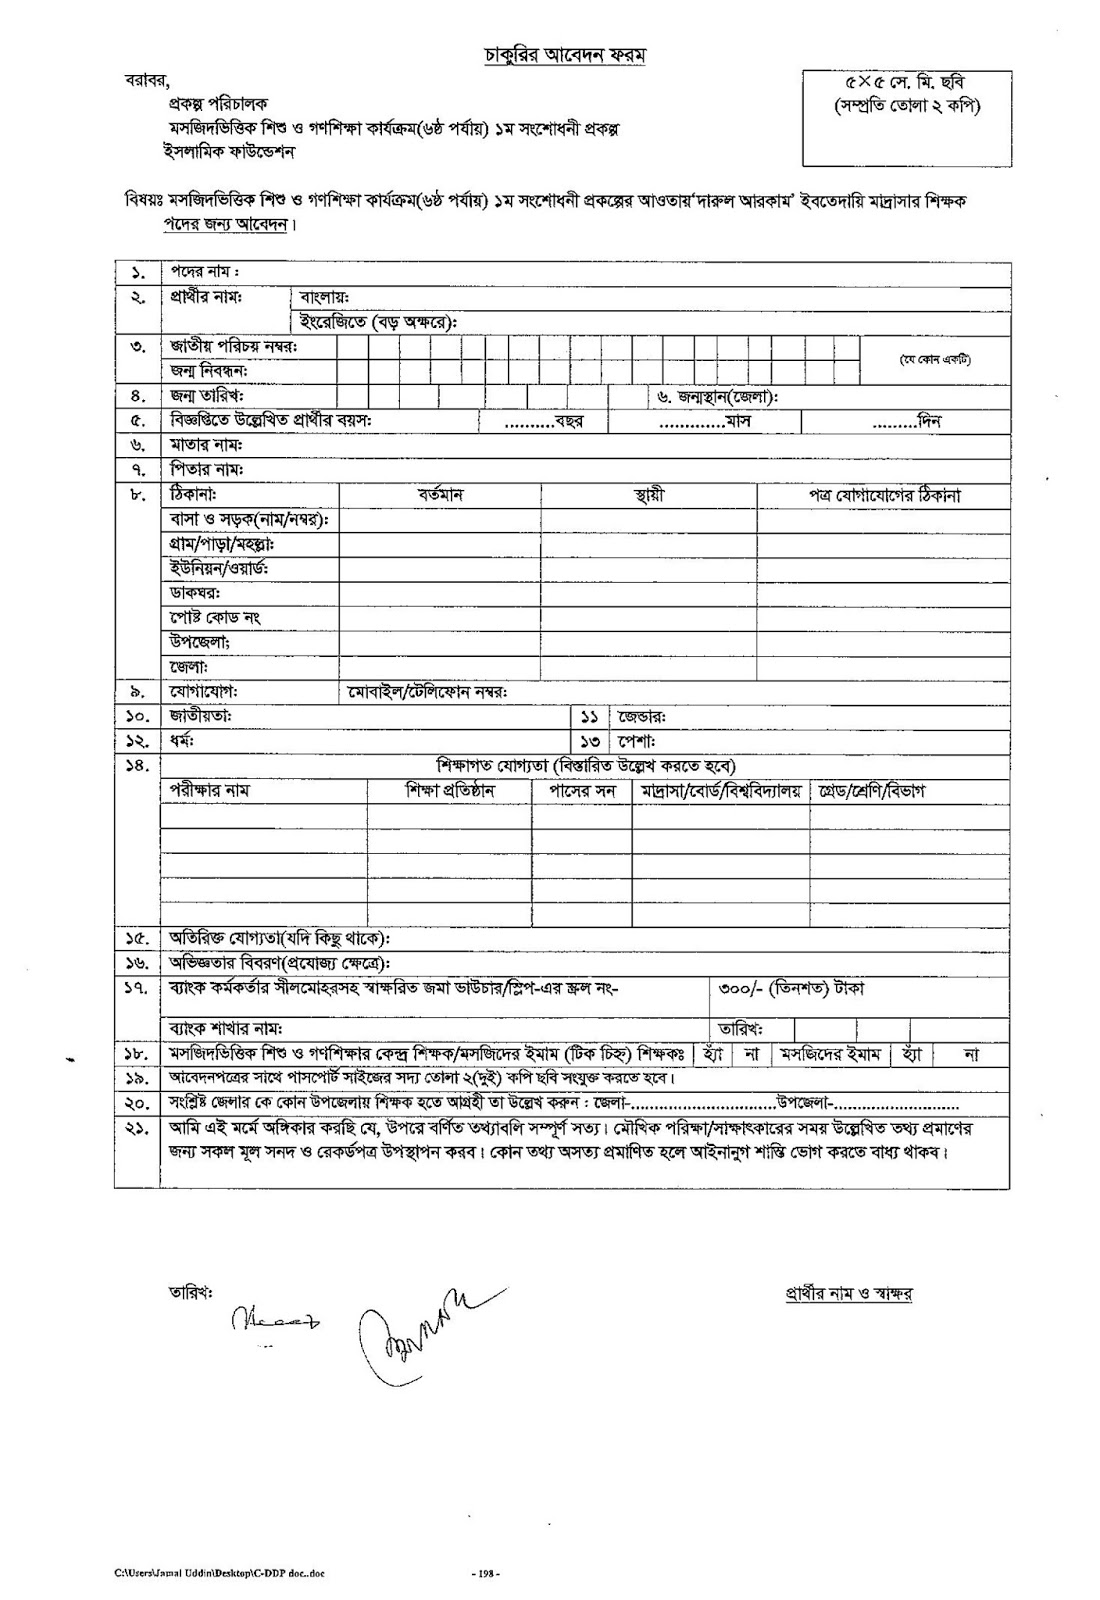 Islamic Foundation Dinishikka Teacher Application Form